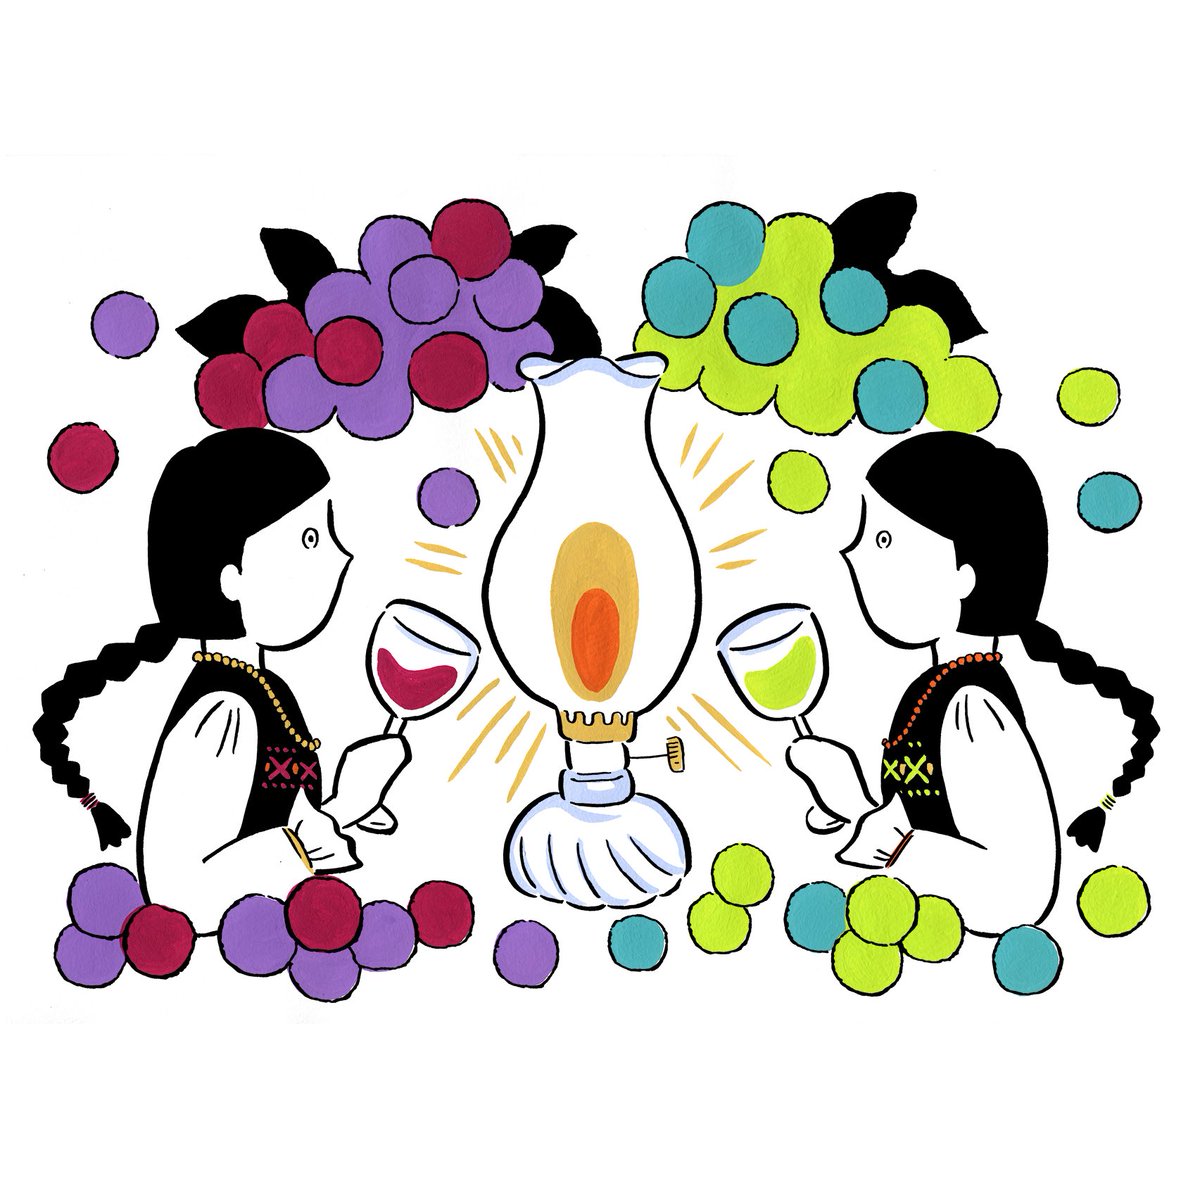 Fumiishiwata Illustration 赤ワインと白ワイン Illustration Fumiishiwata Girls Illustrator Wine Painting Drawing Fruits Sketchbook Art イラスト イラストレーター イラスト好きな人と繋がりたい ワイン 乾杯 女の子イラスト